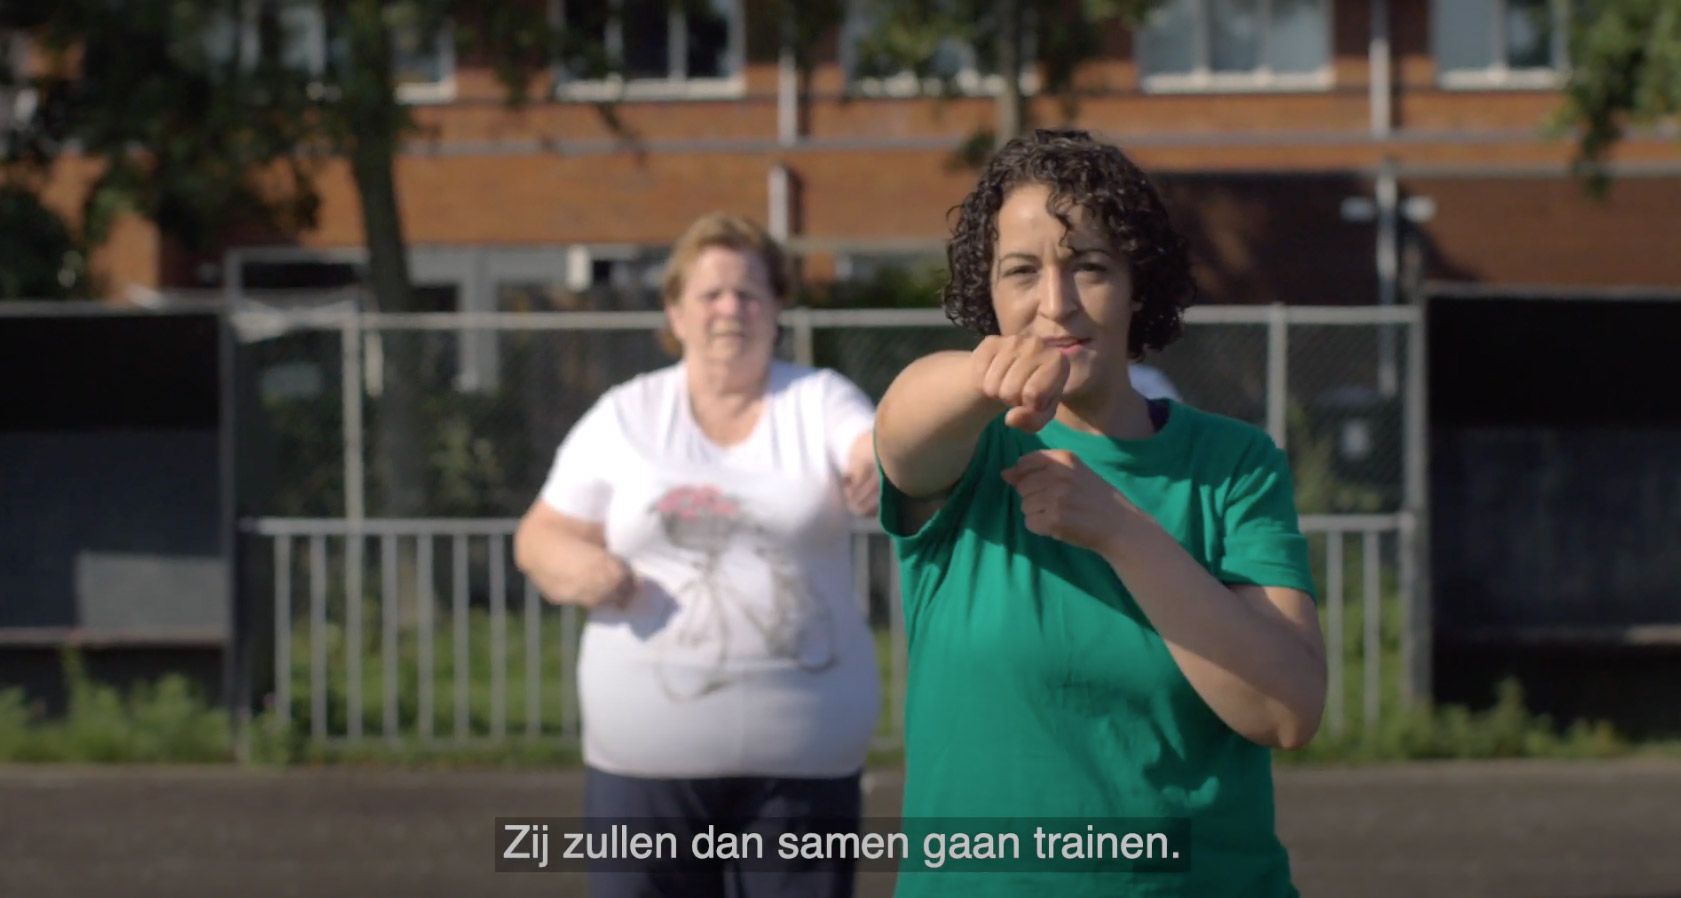 Maartje van den Berg, initiatiefneemster van Polikliniek Samen, vertelt over haar werkwijze